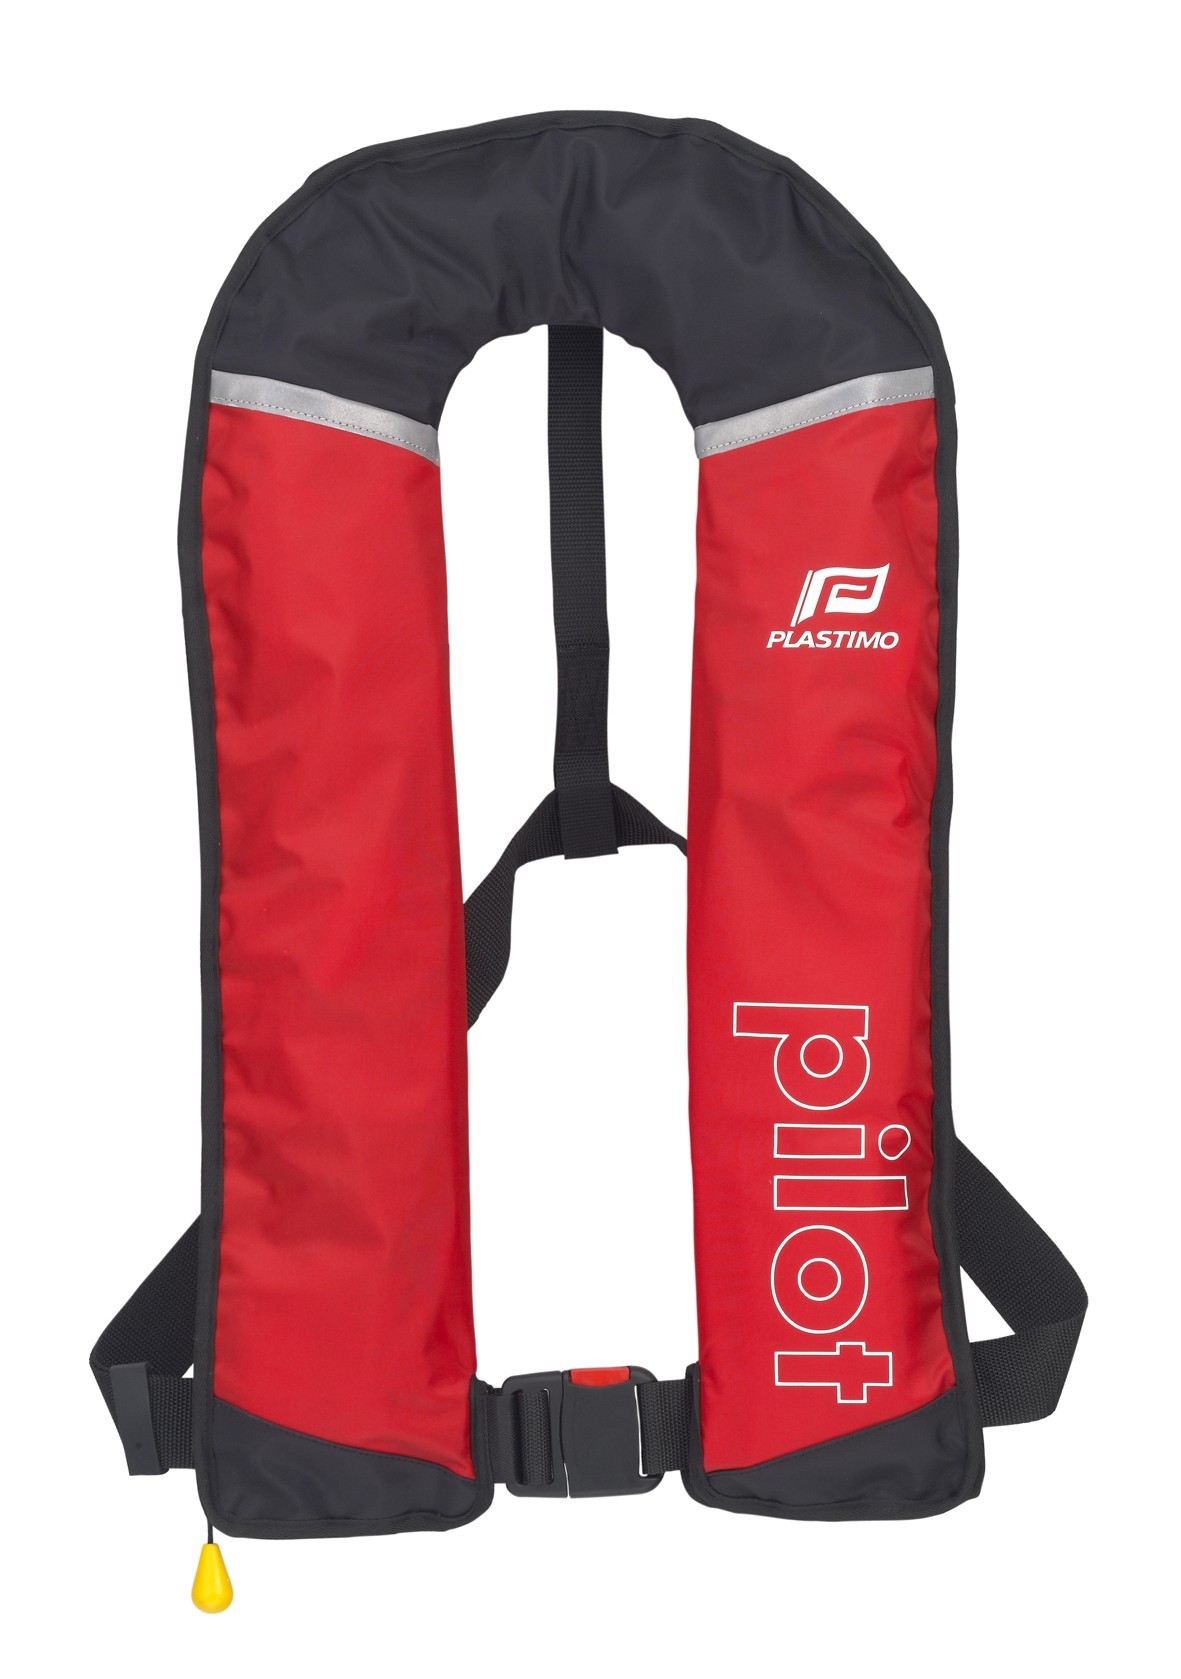 Pilot 275 inflatable lifejacket